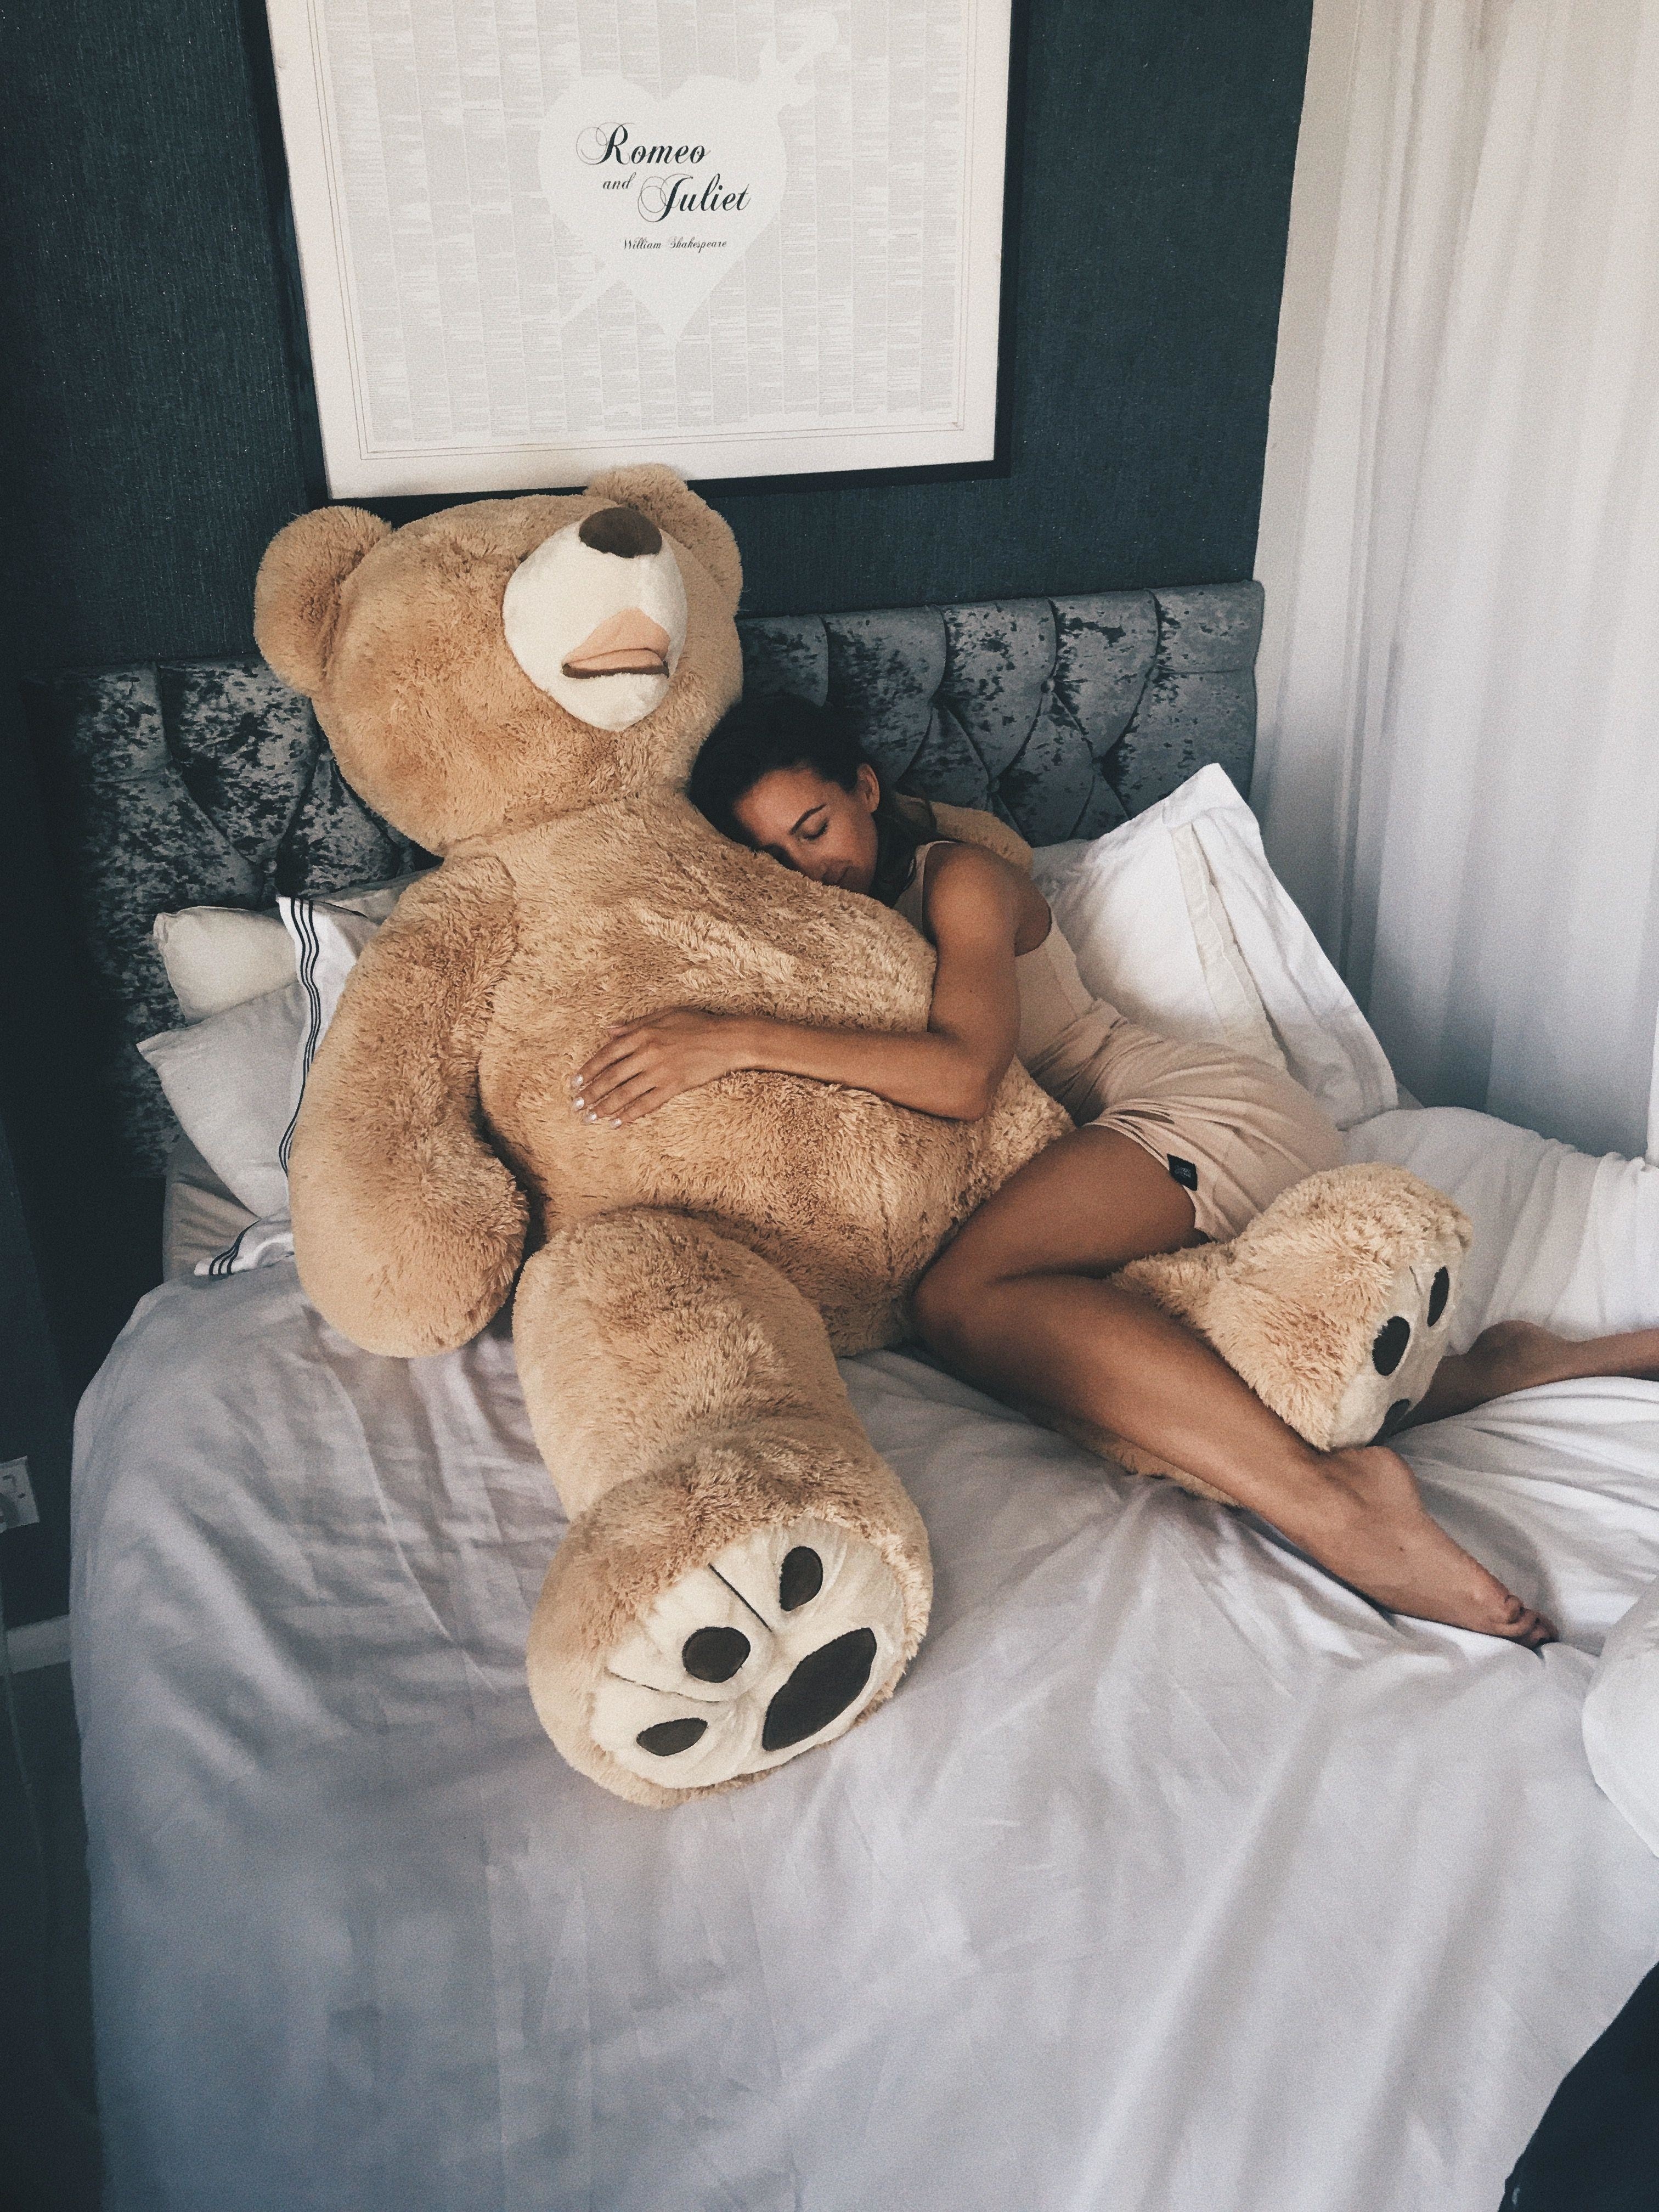 Guy Fucks Teddy Bear - Sex with a teddy bear guy - porn photo